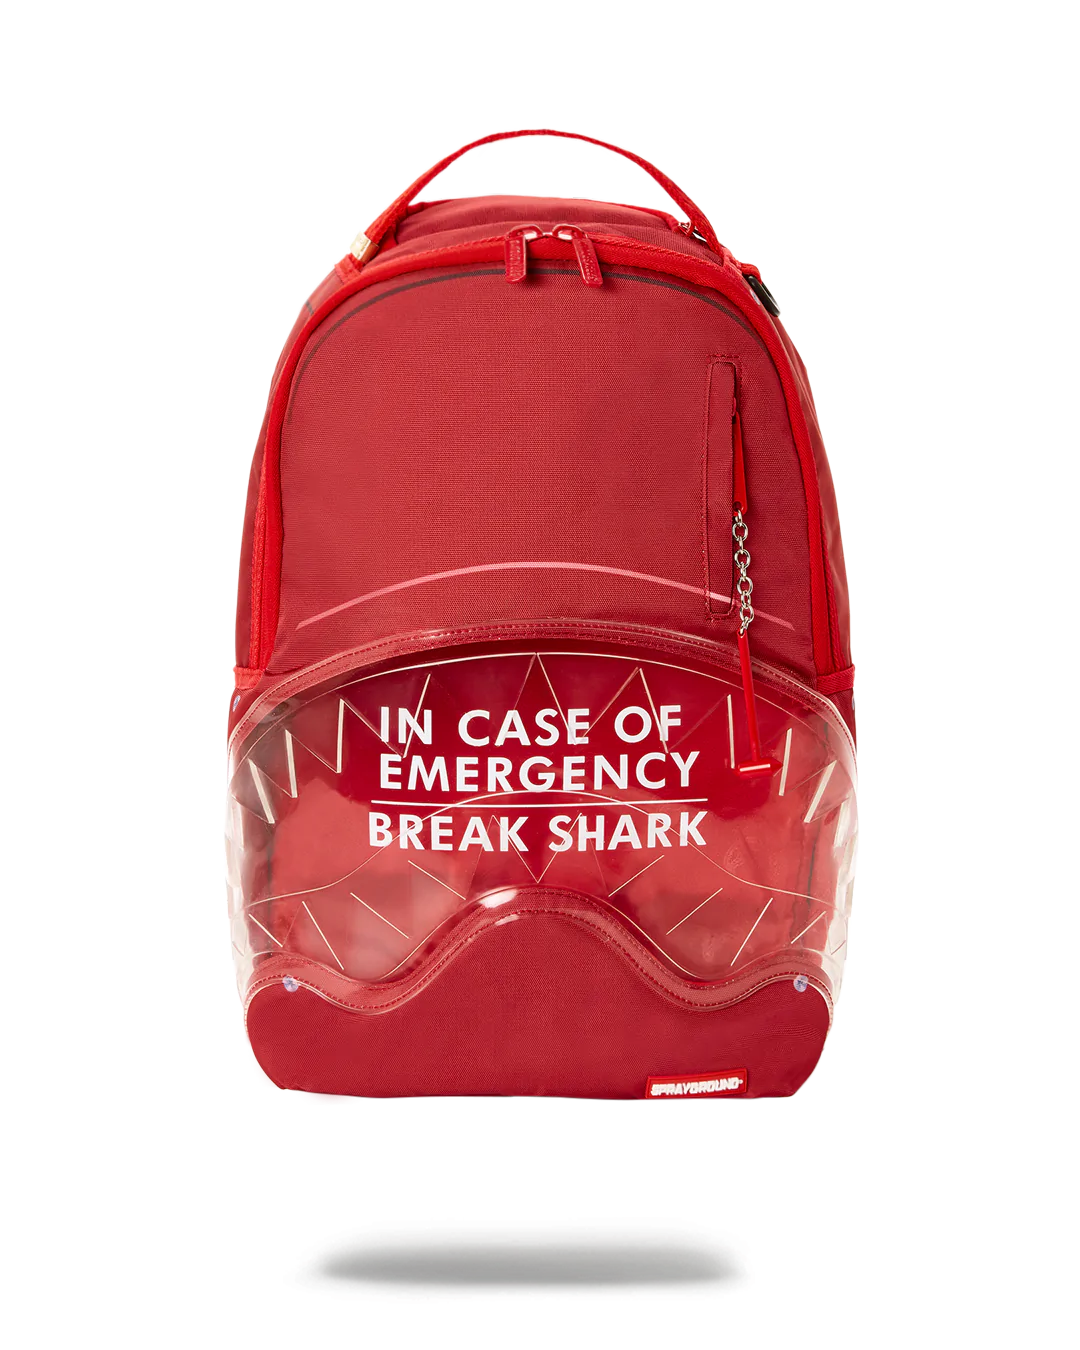 Break In Case Of Emergency Shark Backpack